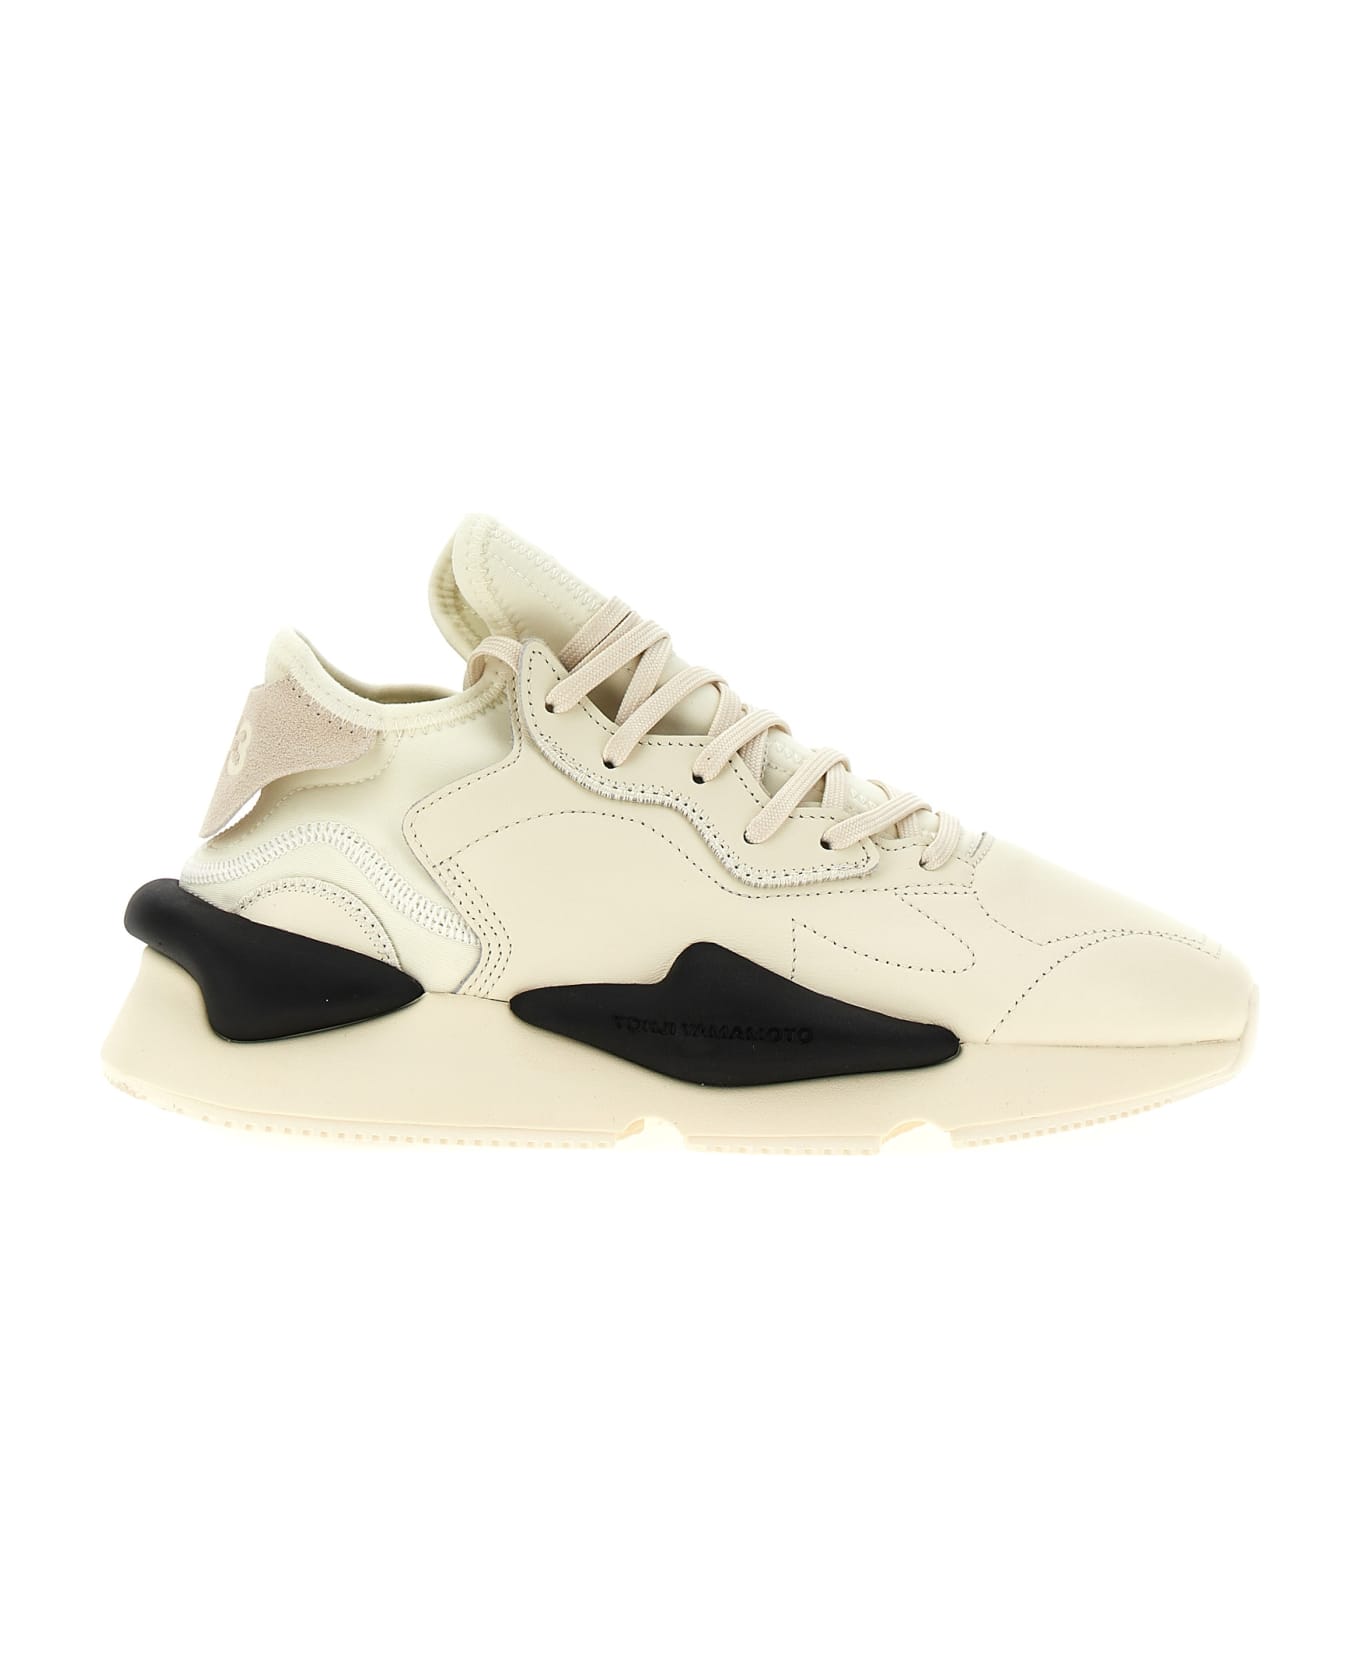 Y-3 'kaiwa' Sneakers - White